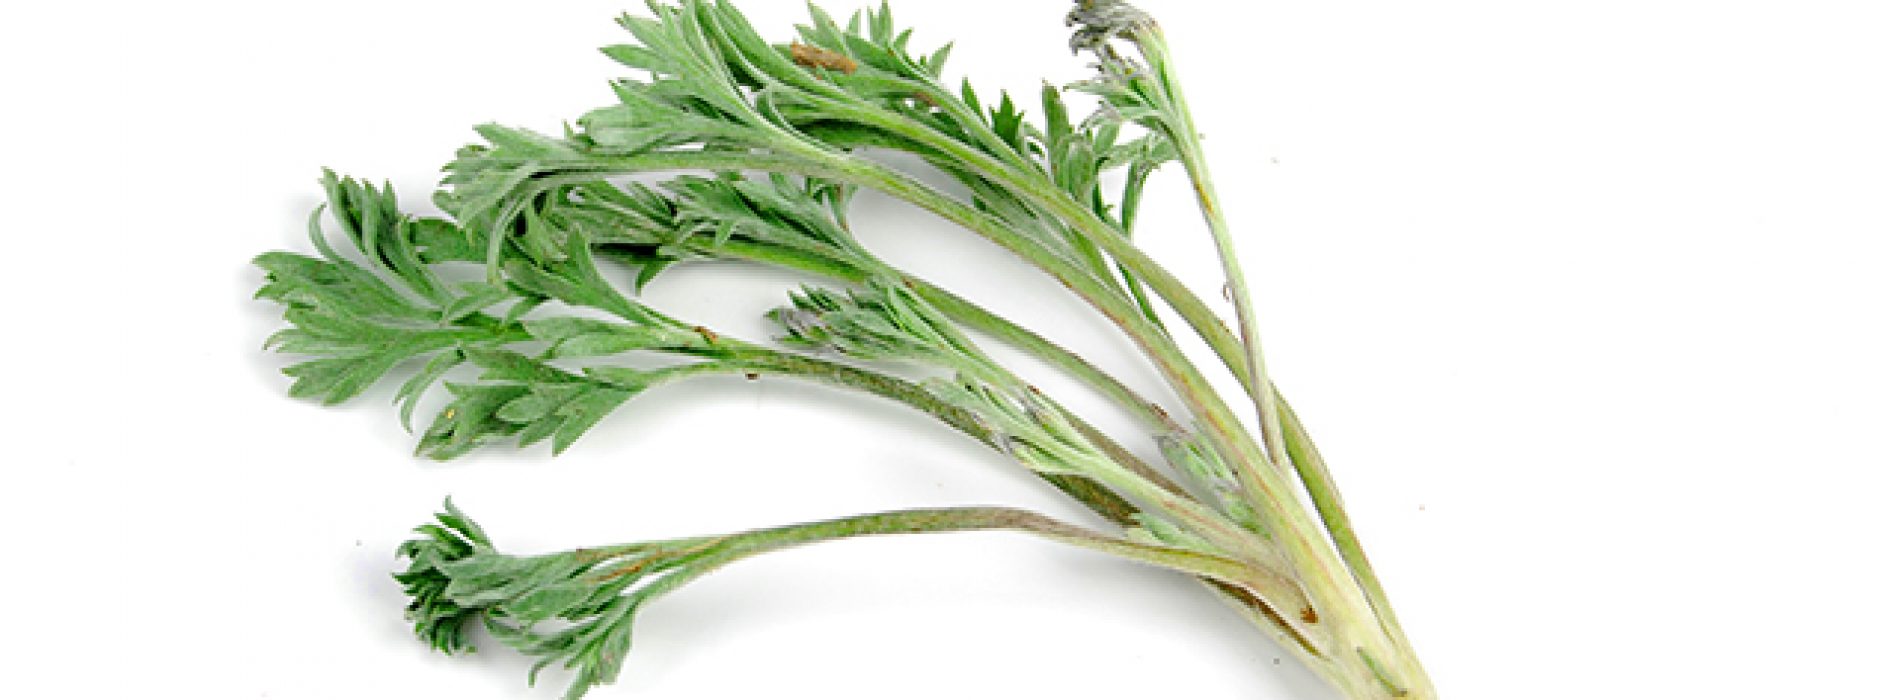 Artemisia capillaris (alsem) bleek mineralisatie van bot te stimuleren, en botverlies te voorkomen